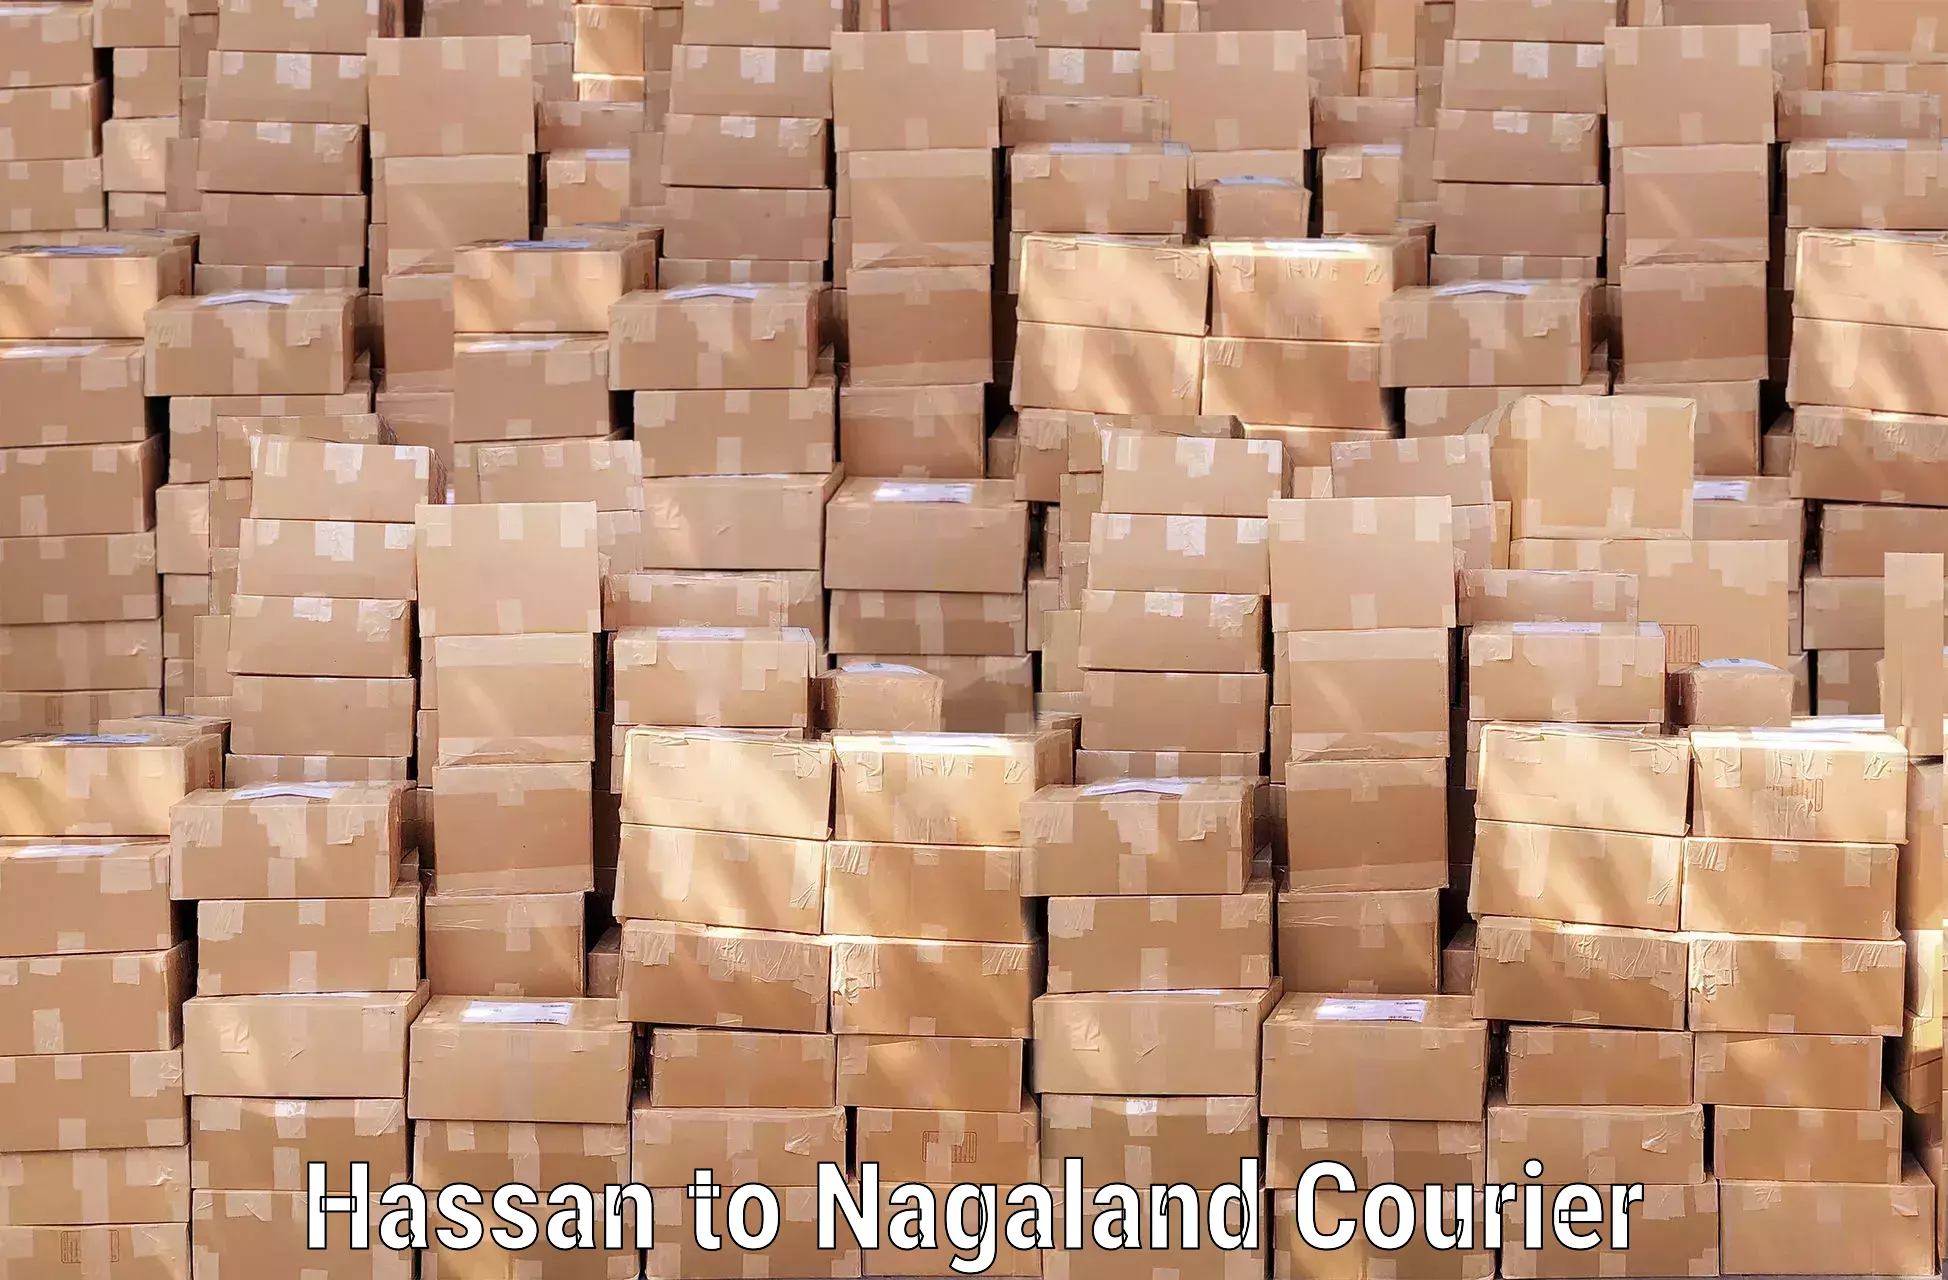 Baggage shipping experts Hassan to Nagaland